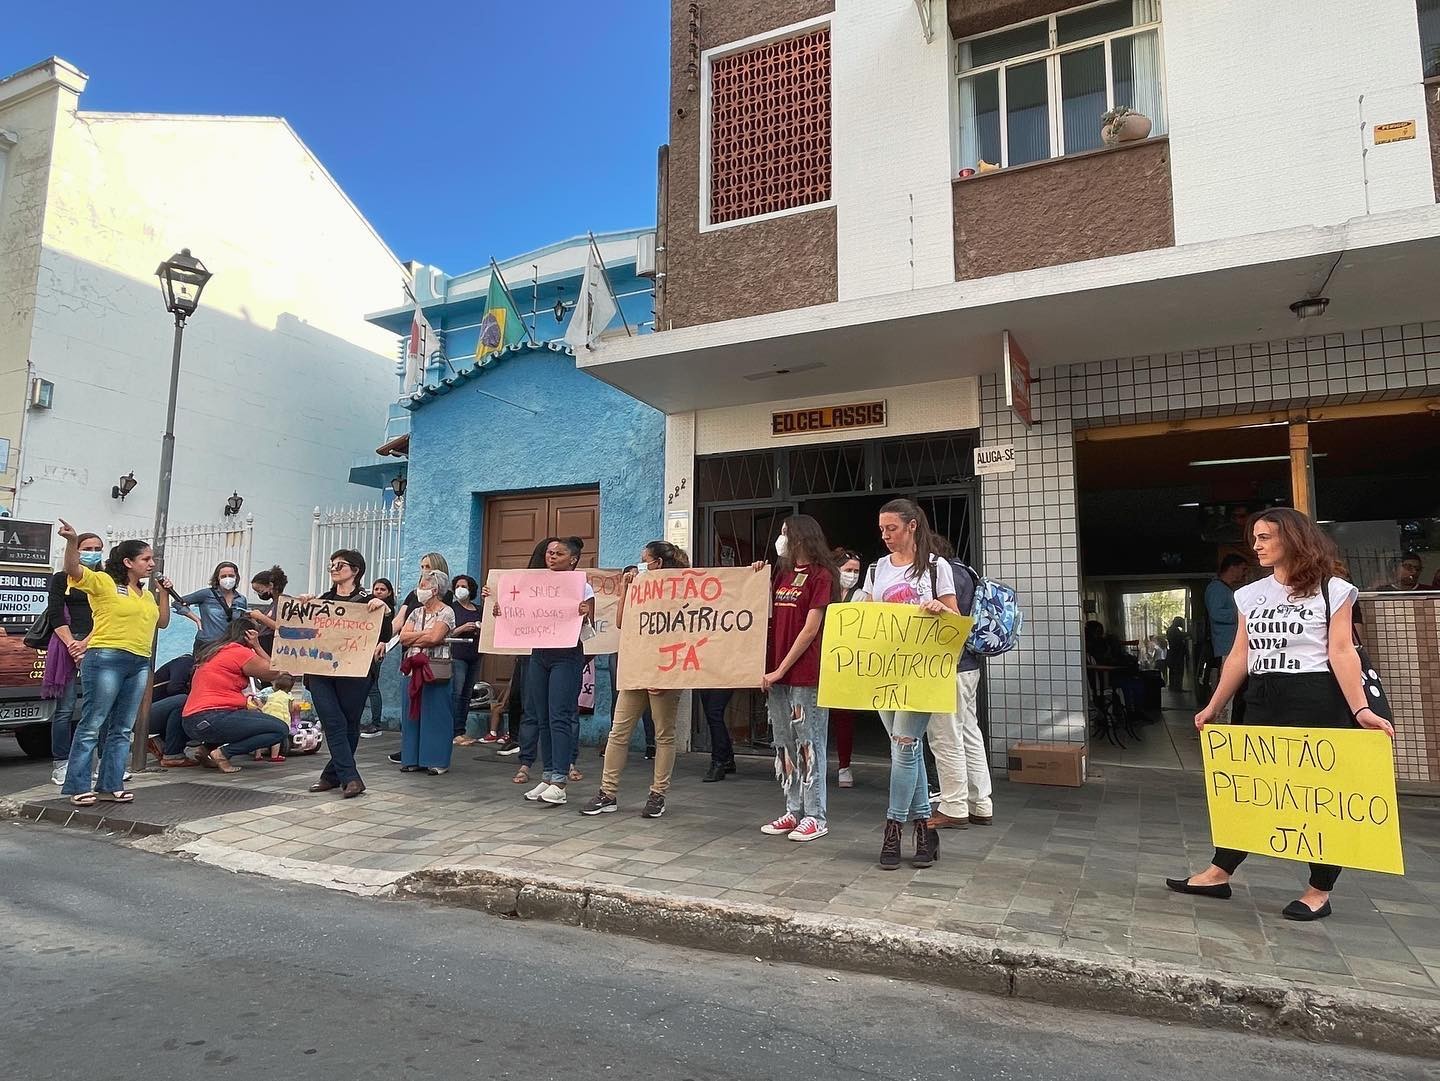 Moradores reclamam de falta de plantão pediátrico pelo SUS em São João del Rei